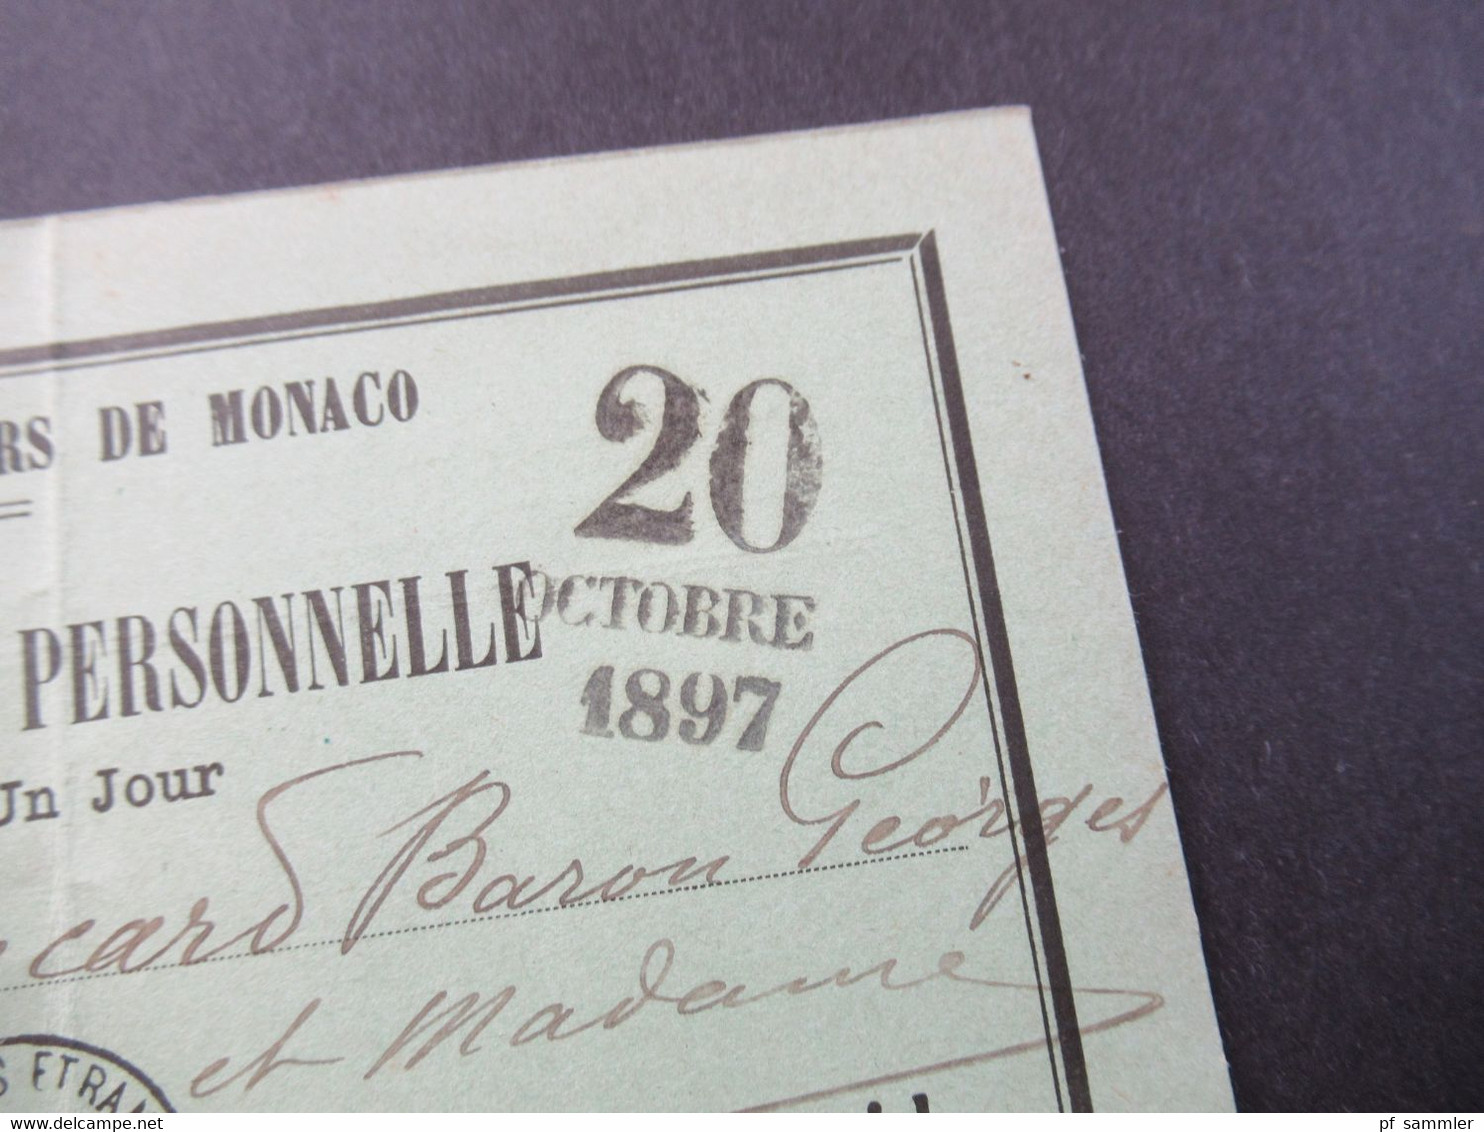 Monaco 20.10.1897 Carte D'Admission Personelle Cercle Des Etrangers De Monaco Valabe Pour Un Jour - Lettres & Documents